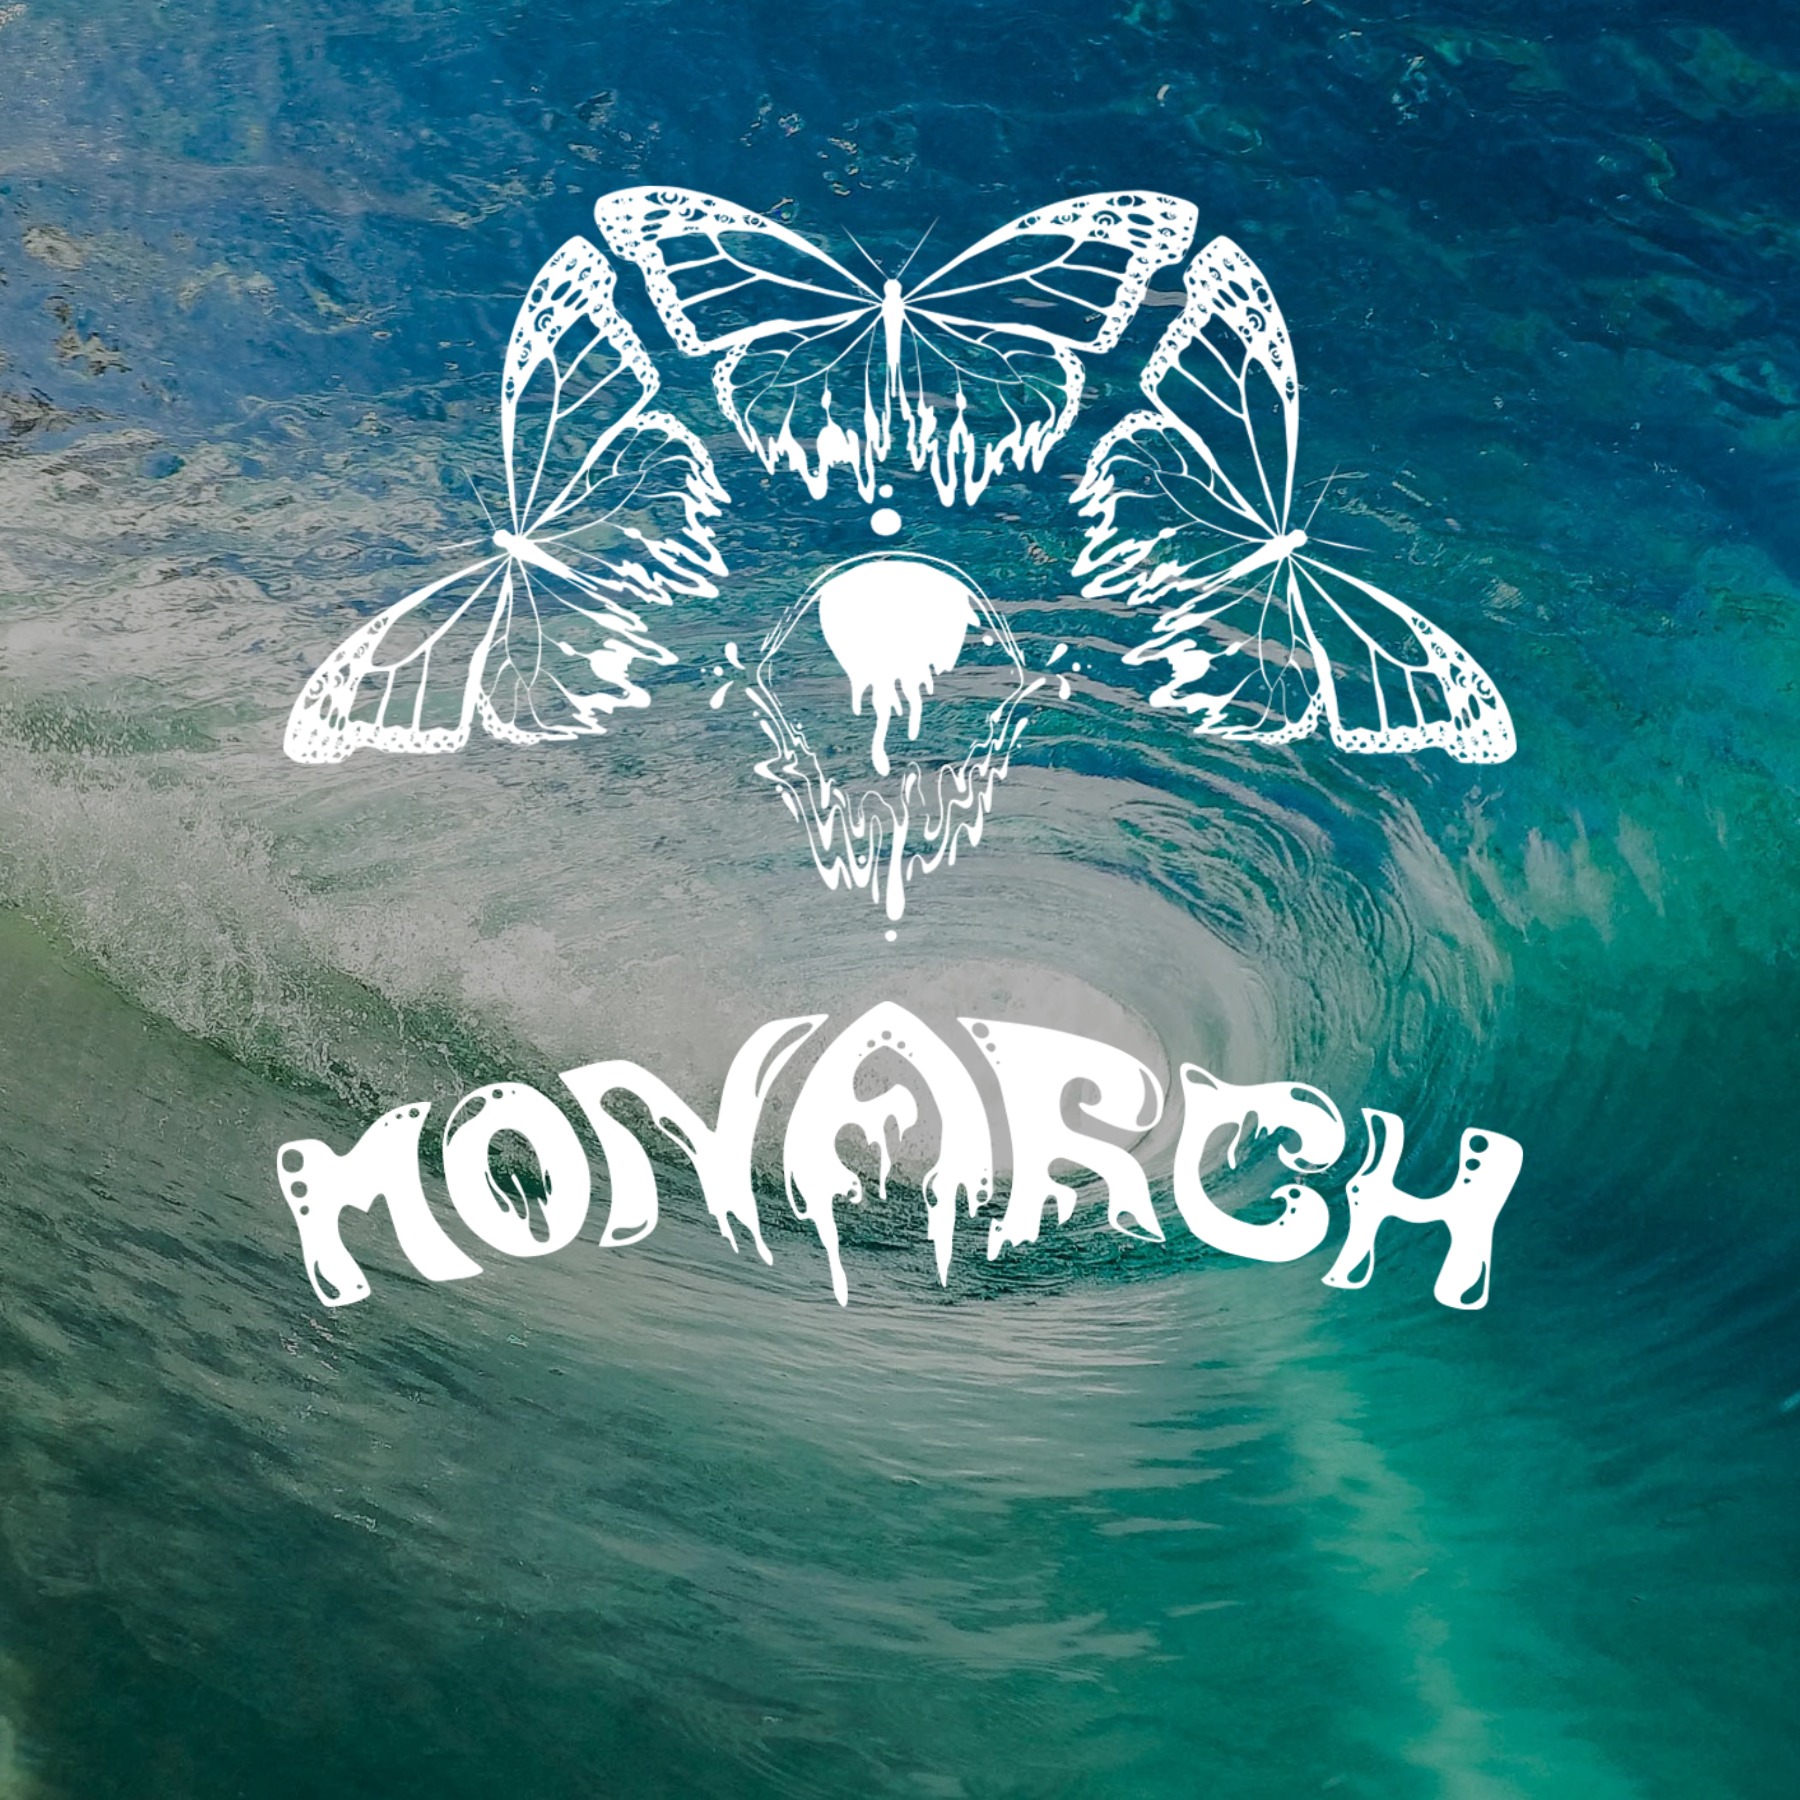 Monarch Surf Shop Image link to website